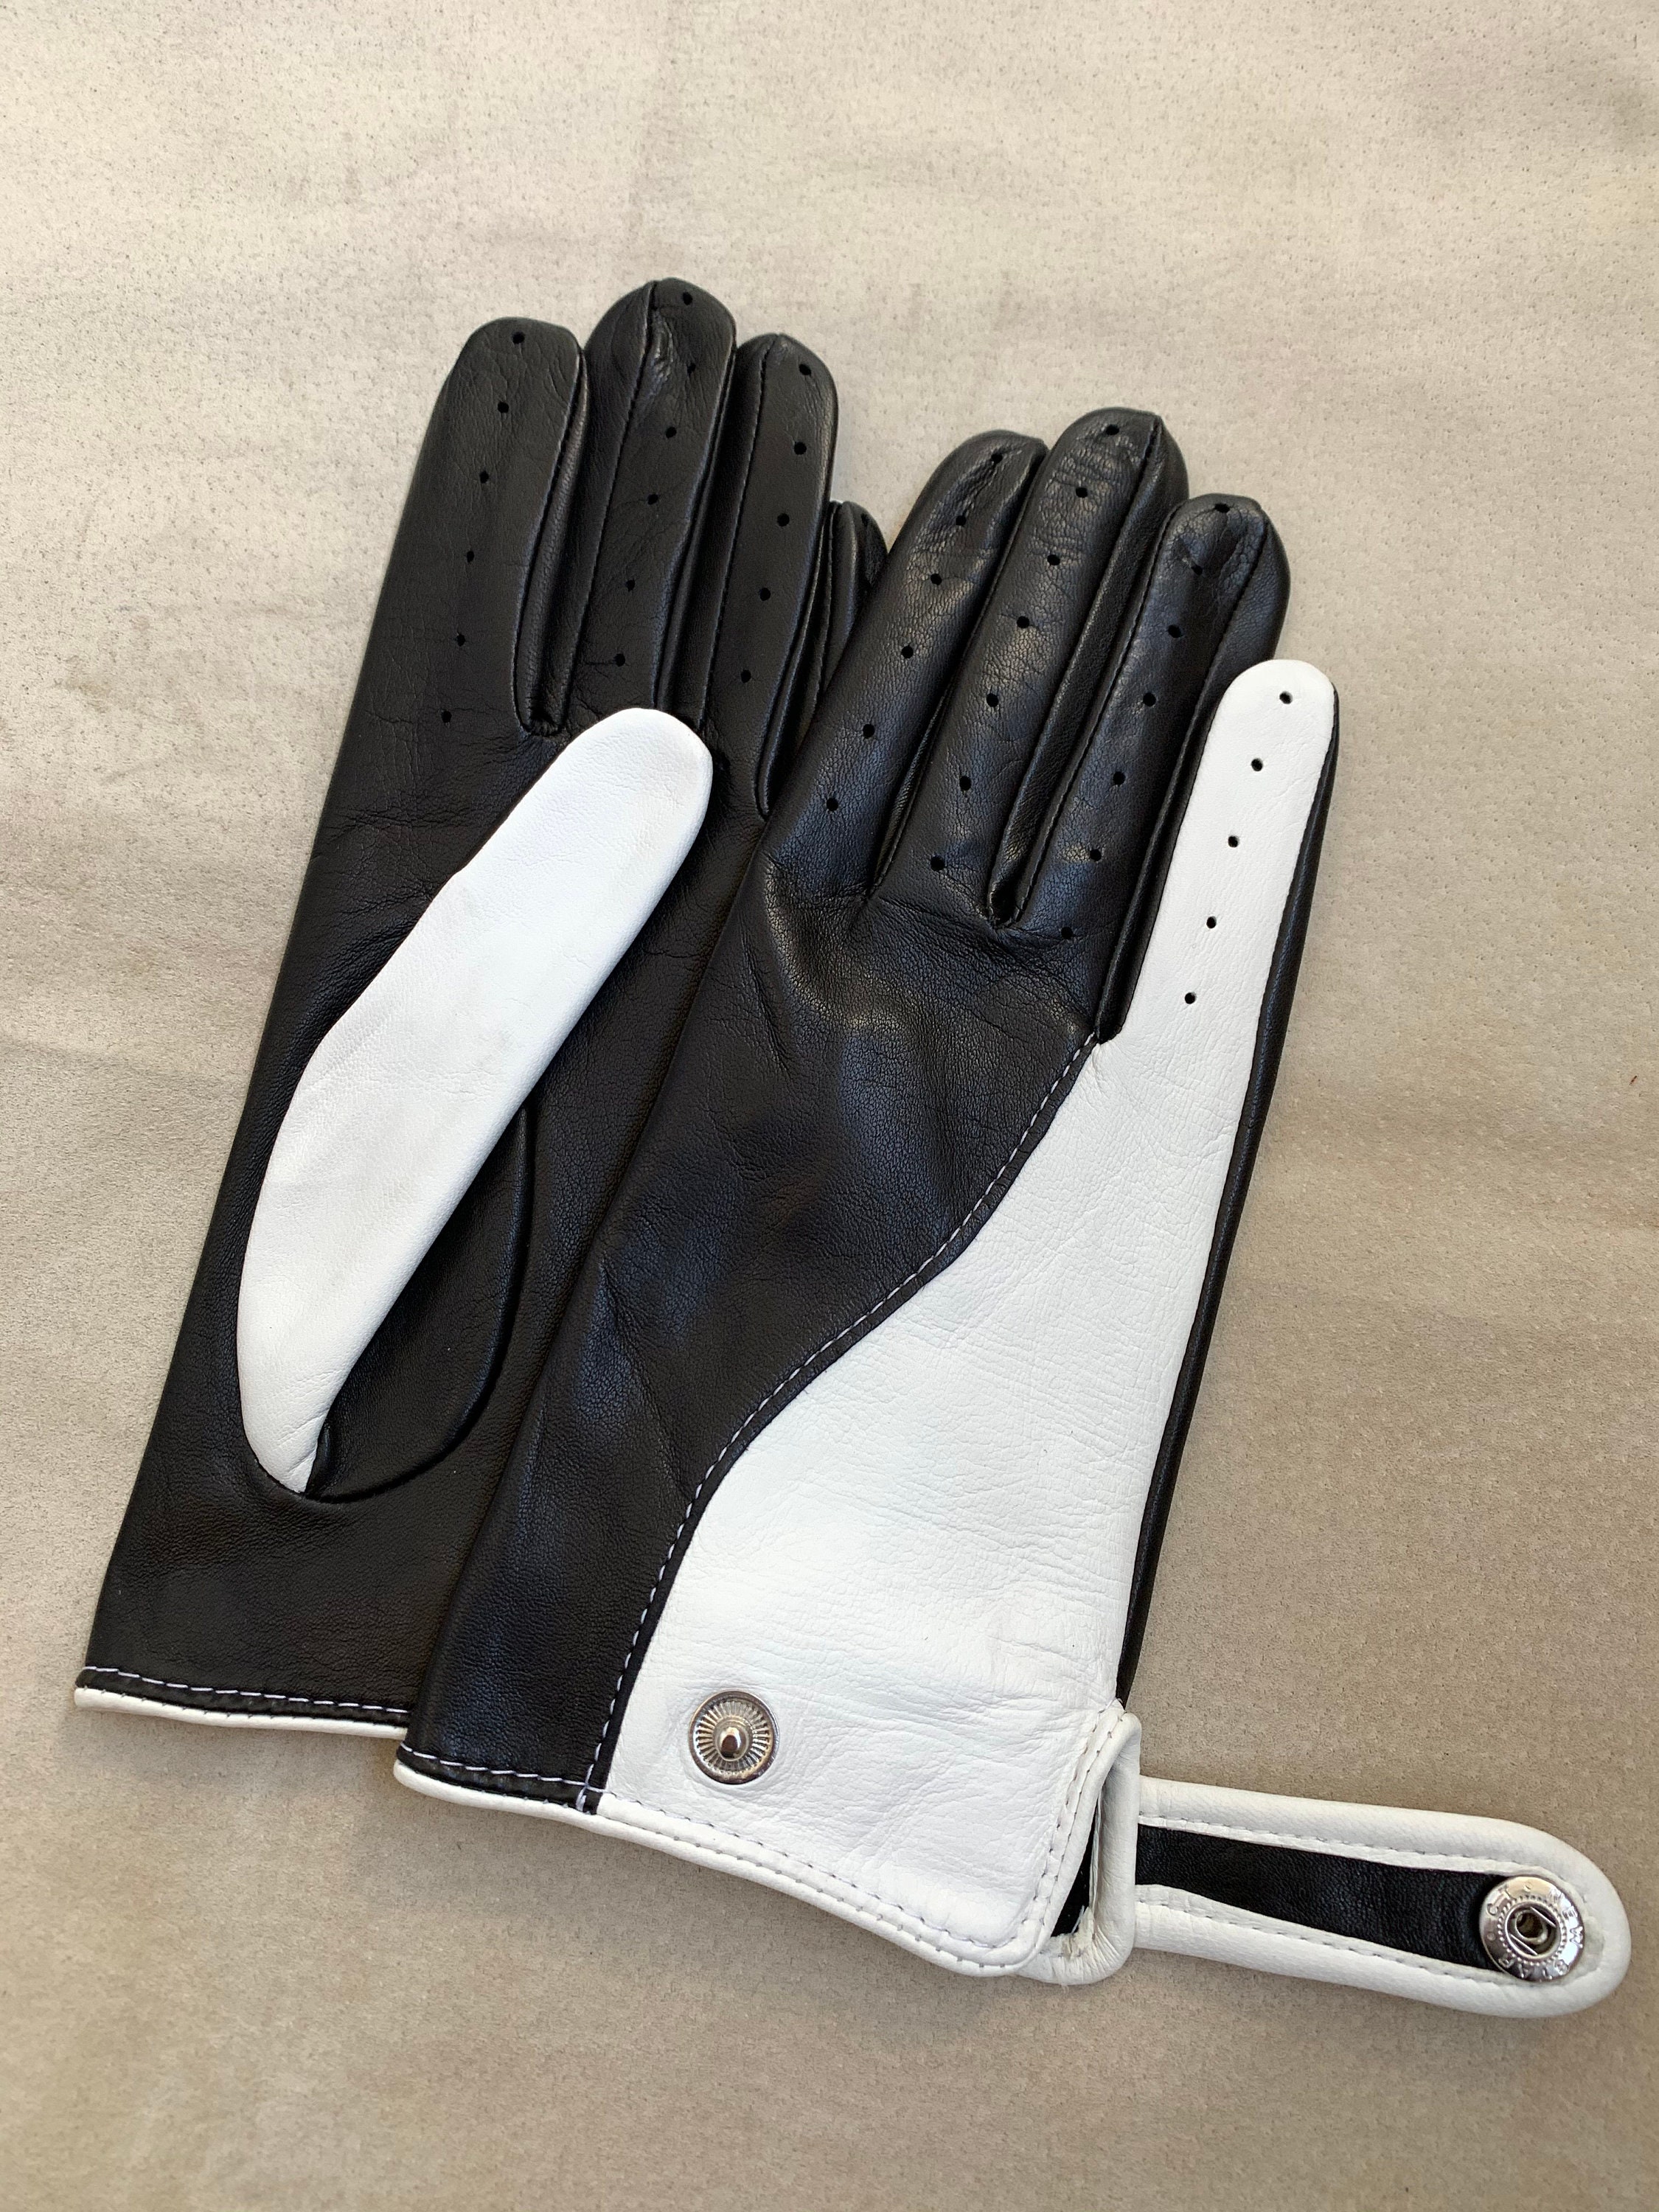 BMW Auto Interieur Leder Autohandschuhe / Custom Design Handschuhe /  Geschenk für sie / Accessoires / Lammfell Leder / weiche Lederhandschuhe -  .de